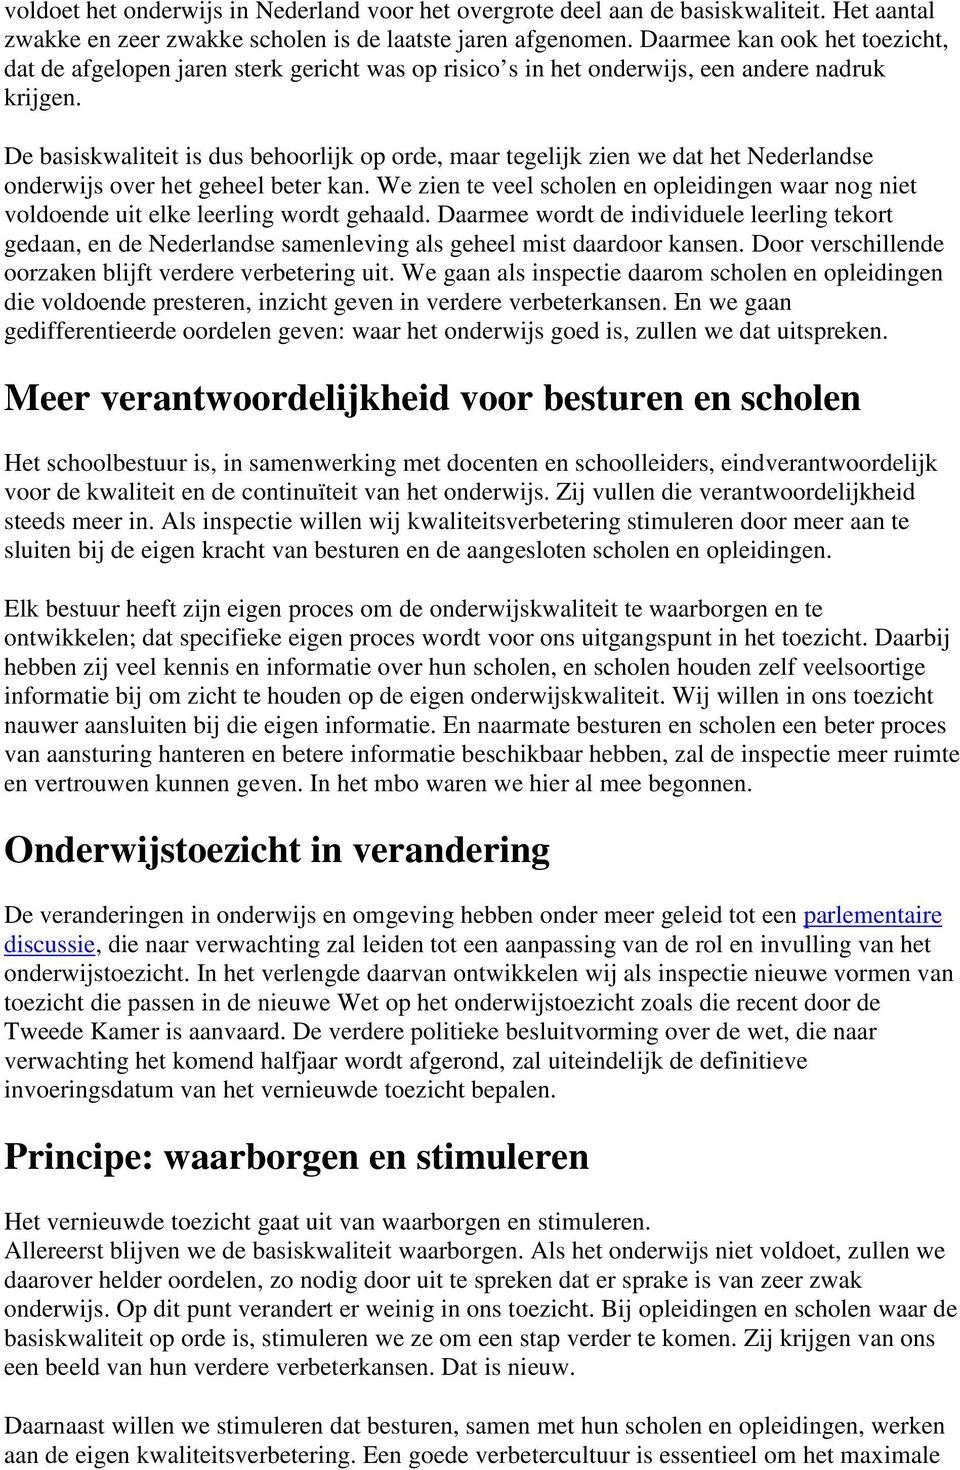 De basiskwaliteit is dus behoorlijk op orde, maar tegelijk zien we dat het Nederlandse onderwijs over het geheel beter kan.